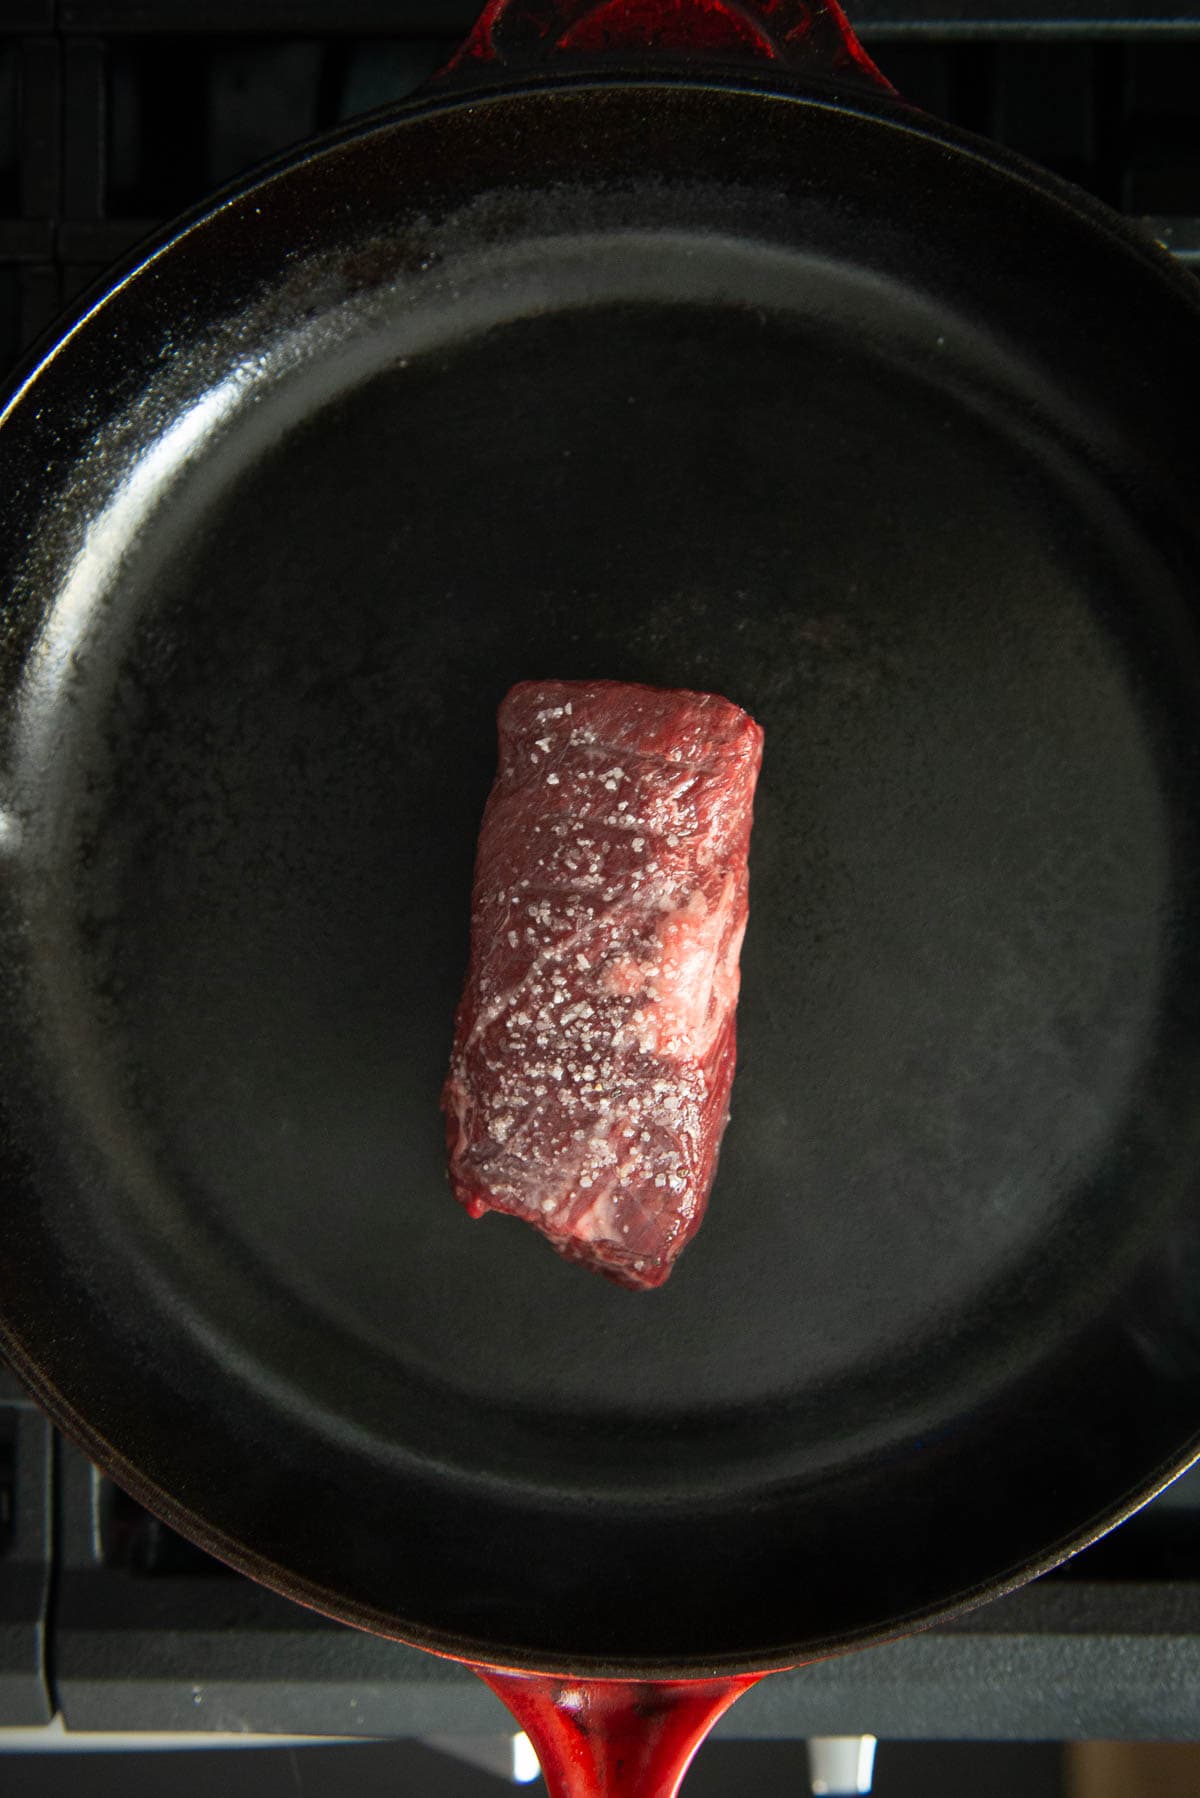 Hanger steak in a frying pan.